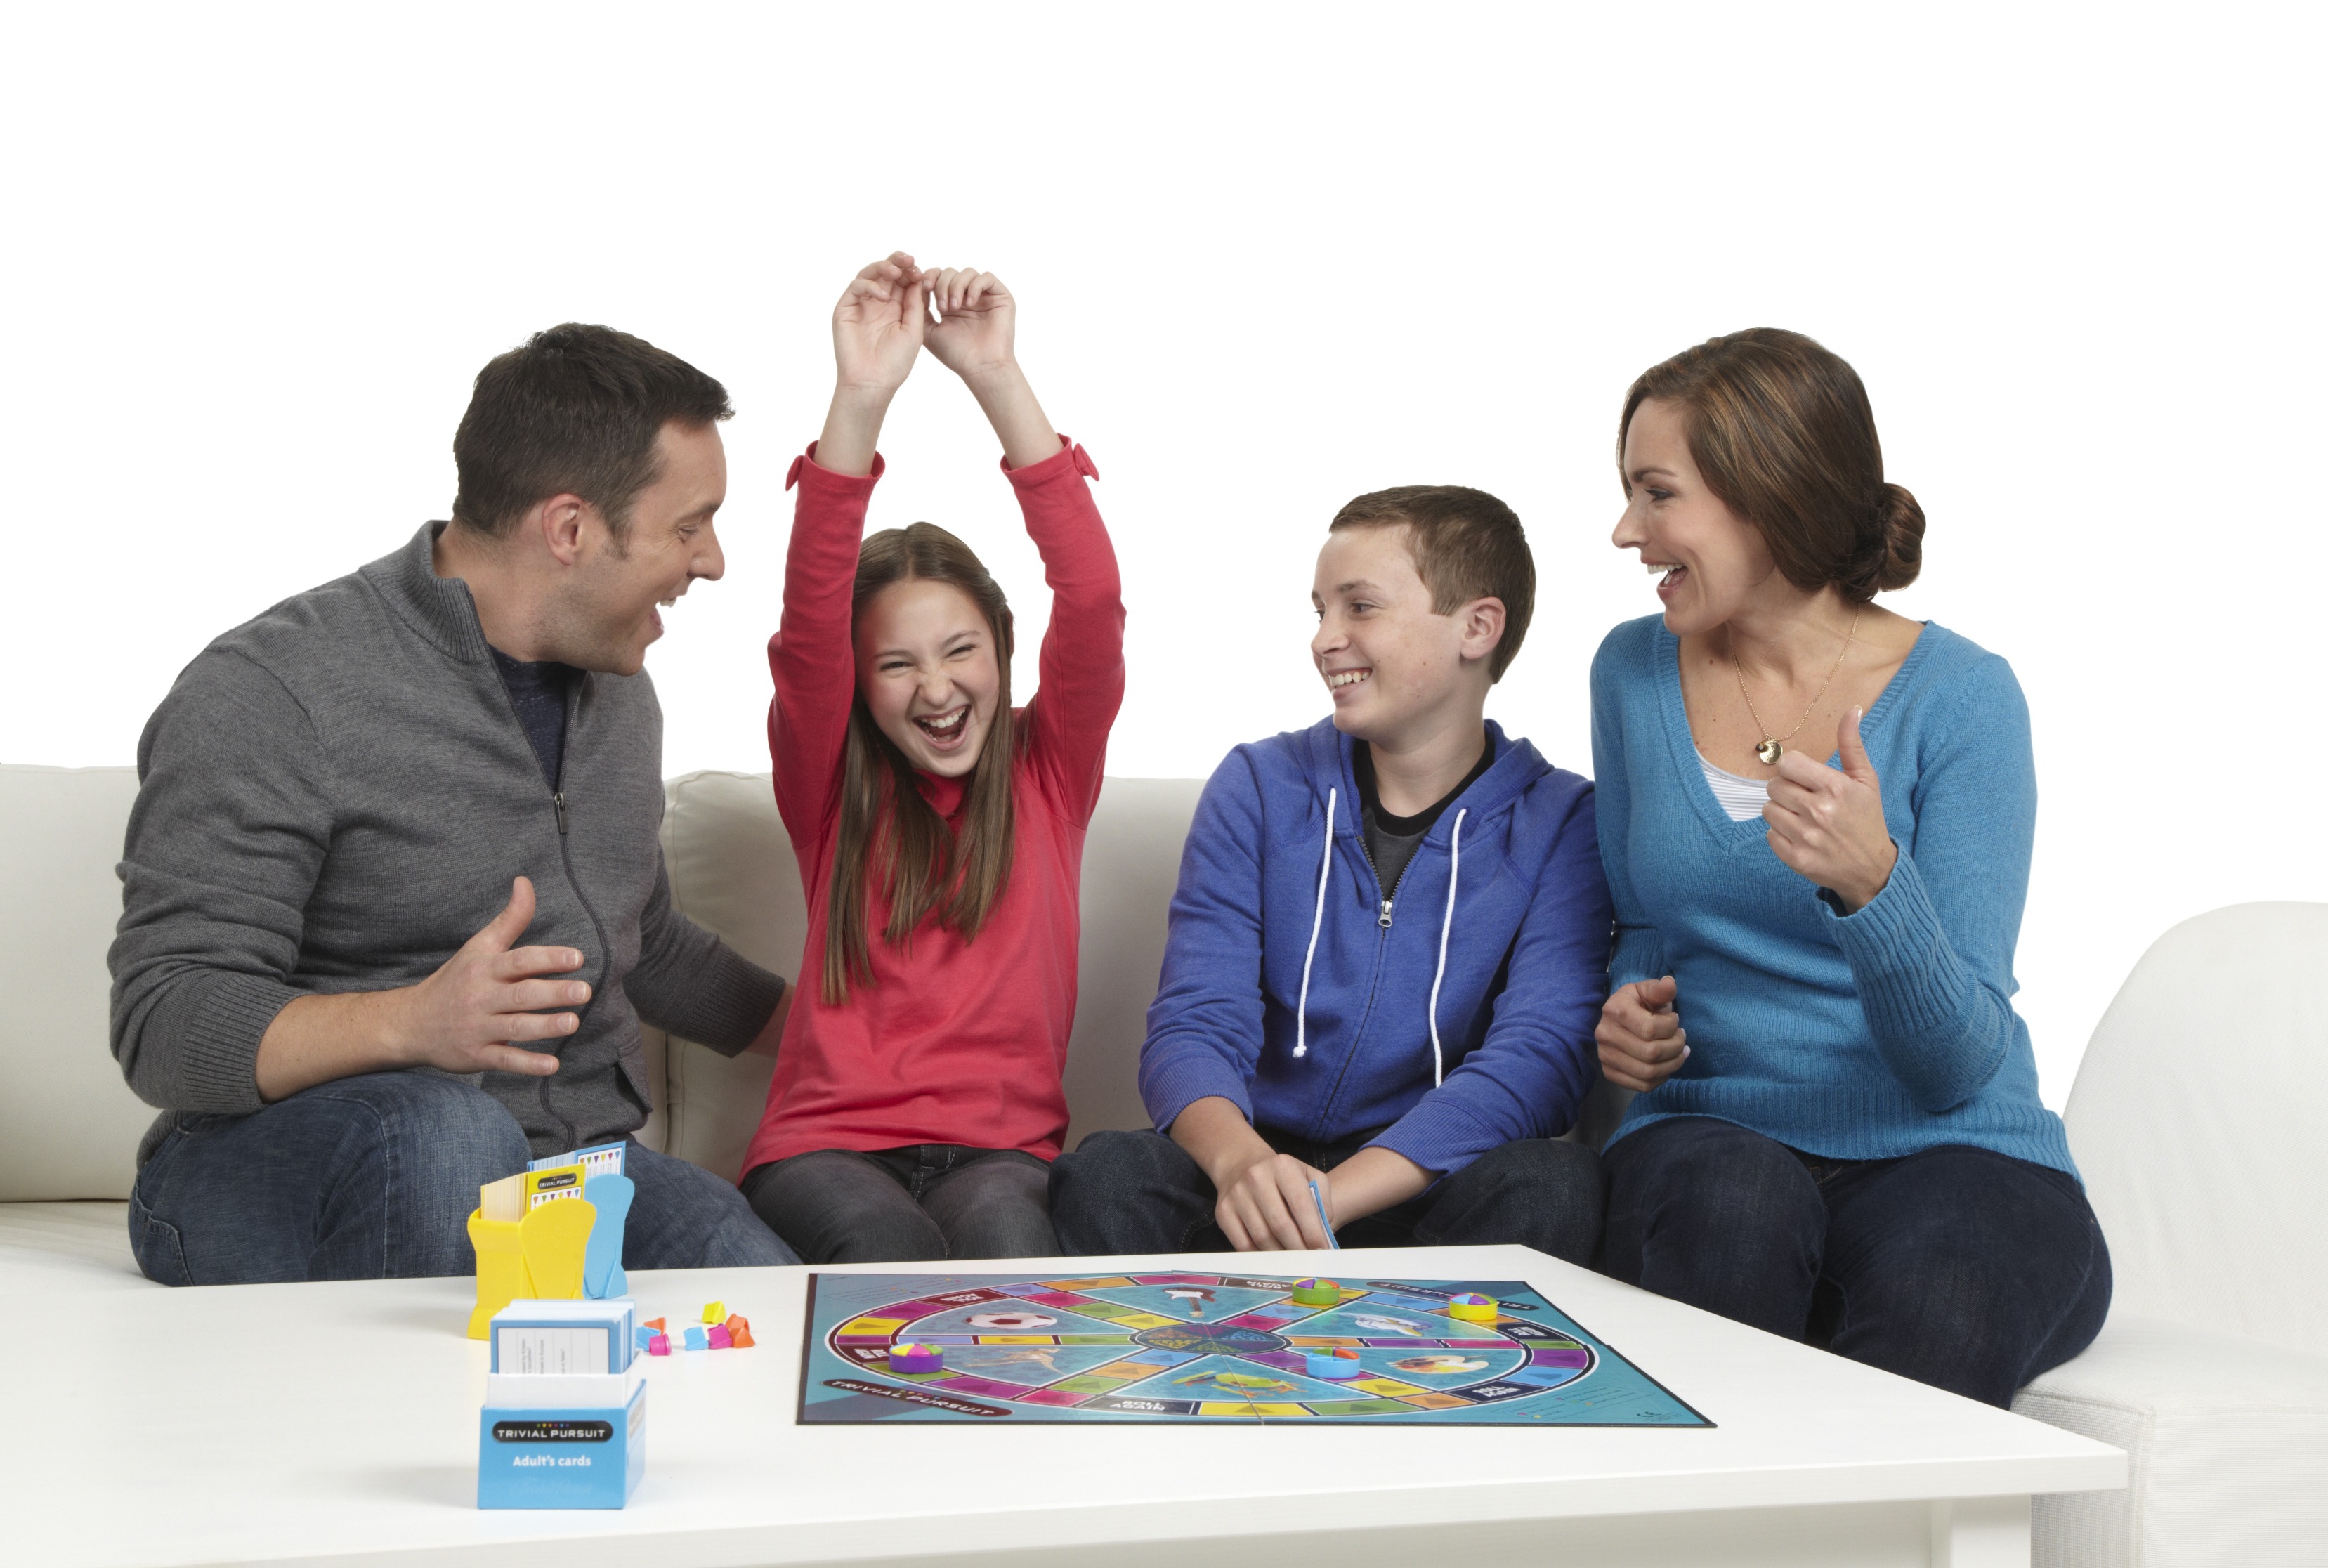 Игры family sharing. Семья играет. Семейные игры. Интересные игры для всей семьи. Семья играет в настольные игры.